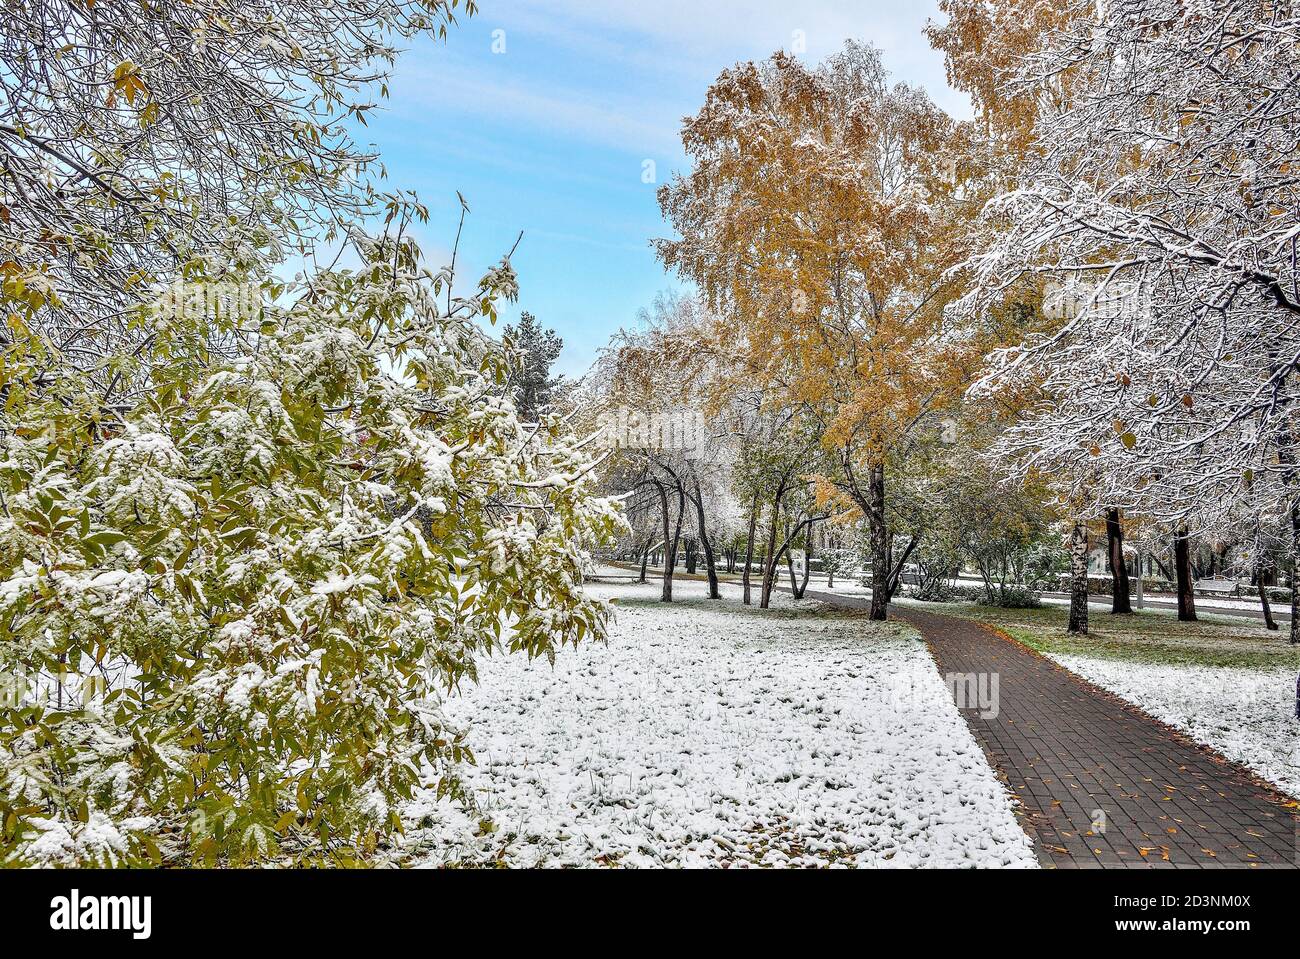 Erster Schneefall im bunten Herbst Stadtpark. Weiße flauschige Schnee bedeckt goldenen, roten, grünen Bäumen und Sträuchern Laub. Wechsel der Jahreszeiten - Märchen von Stockfoto